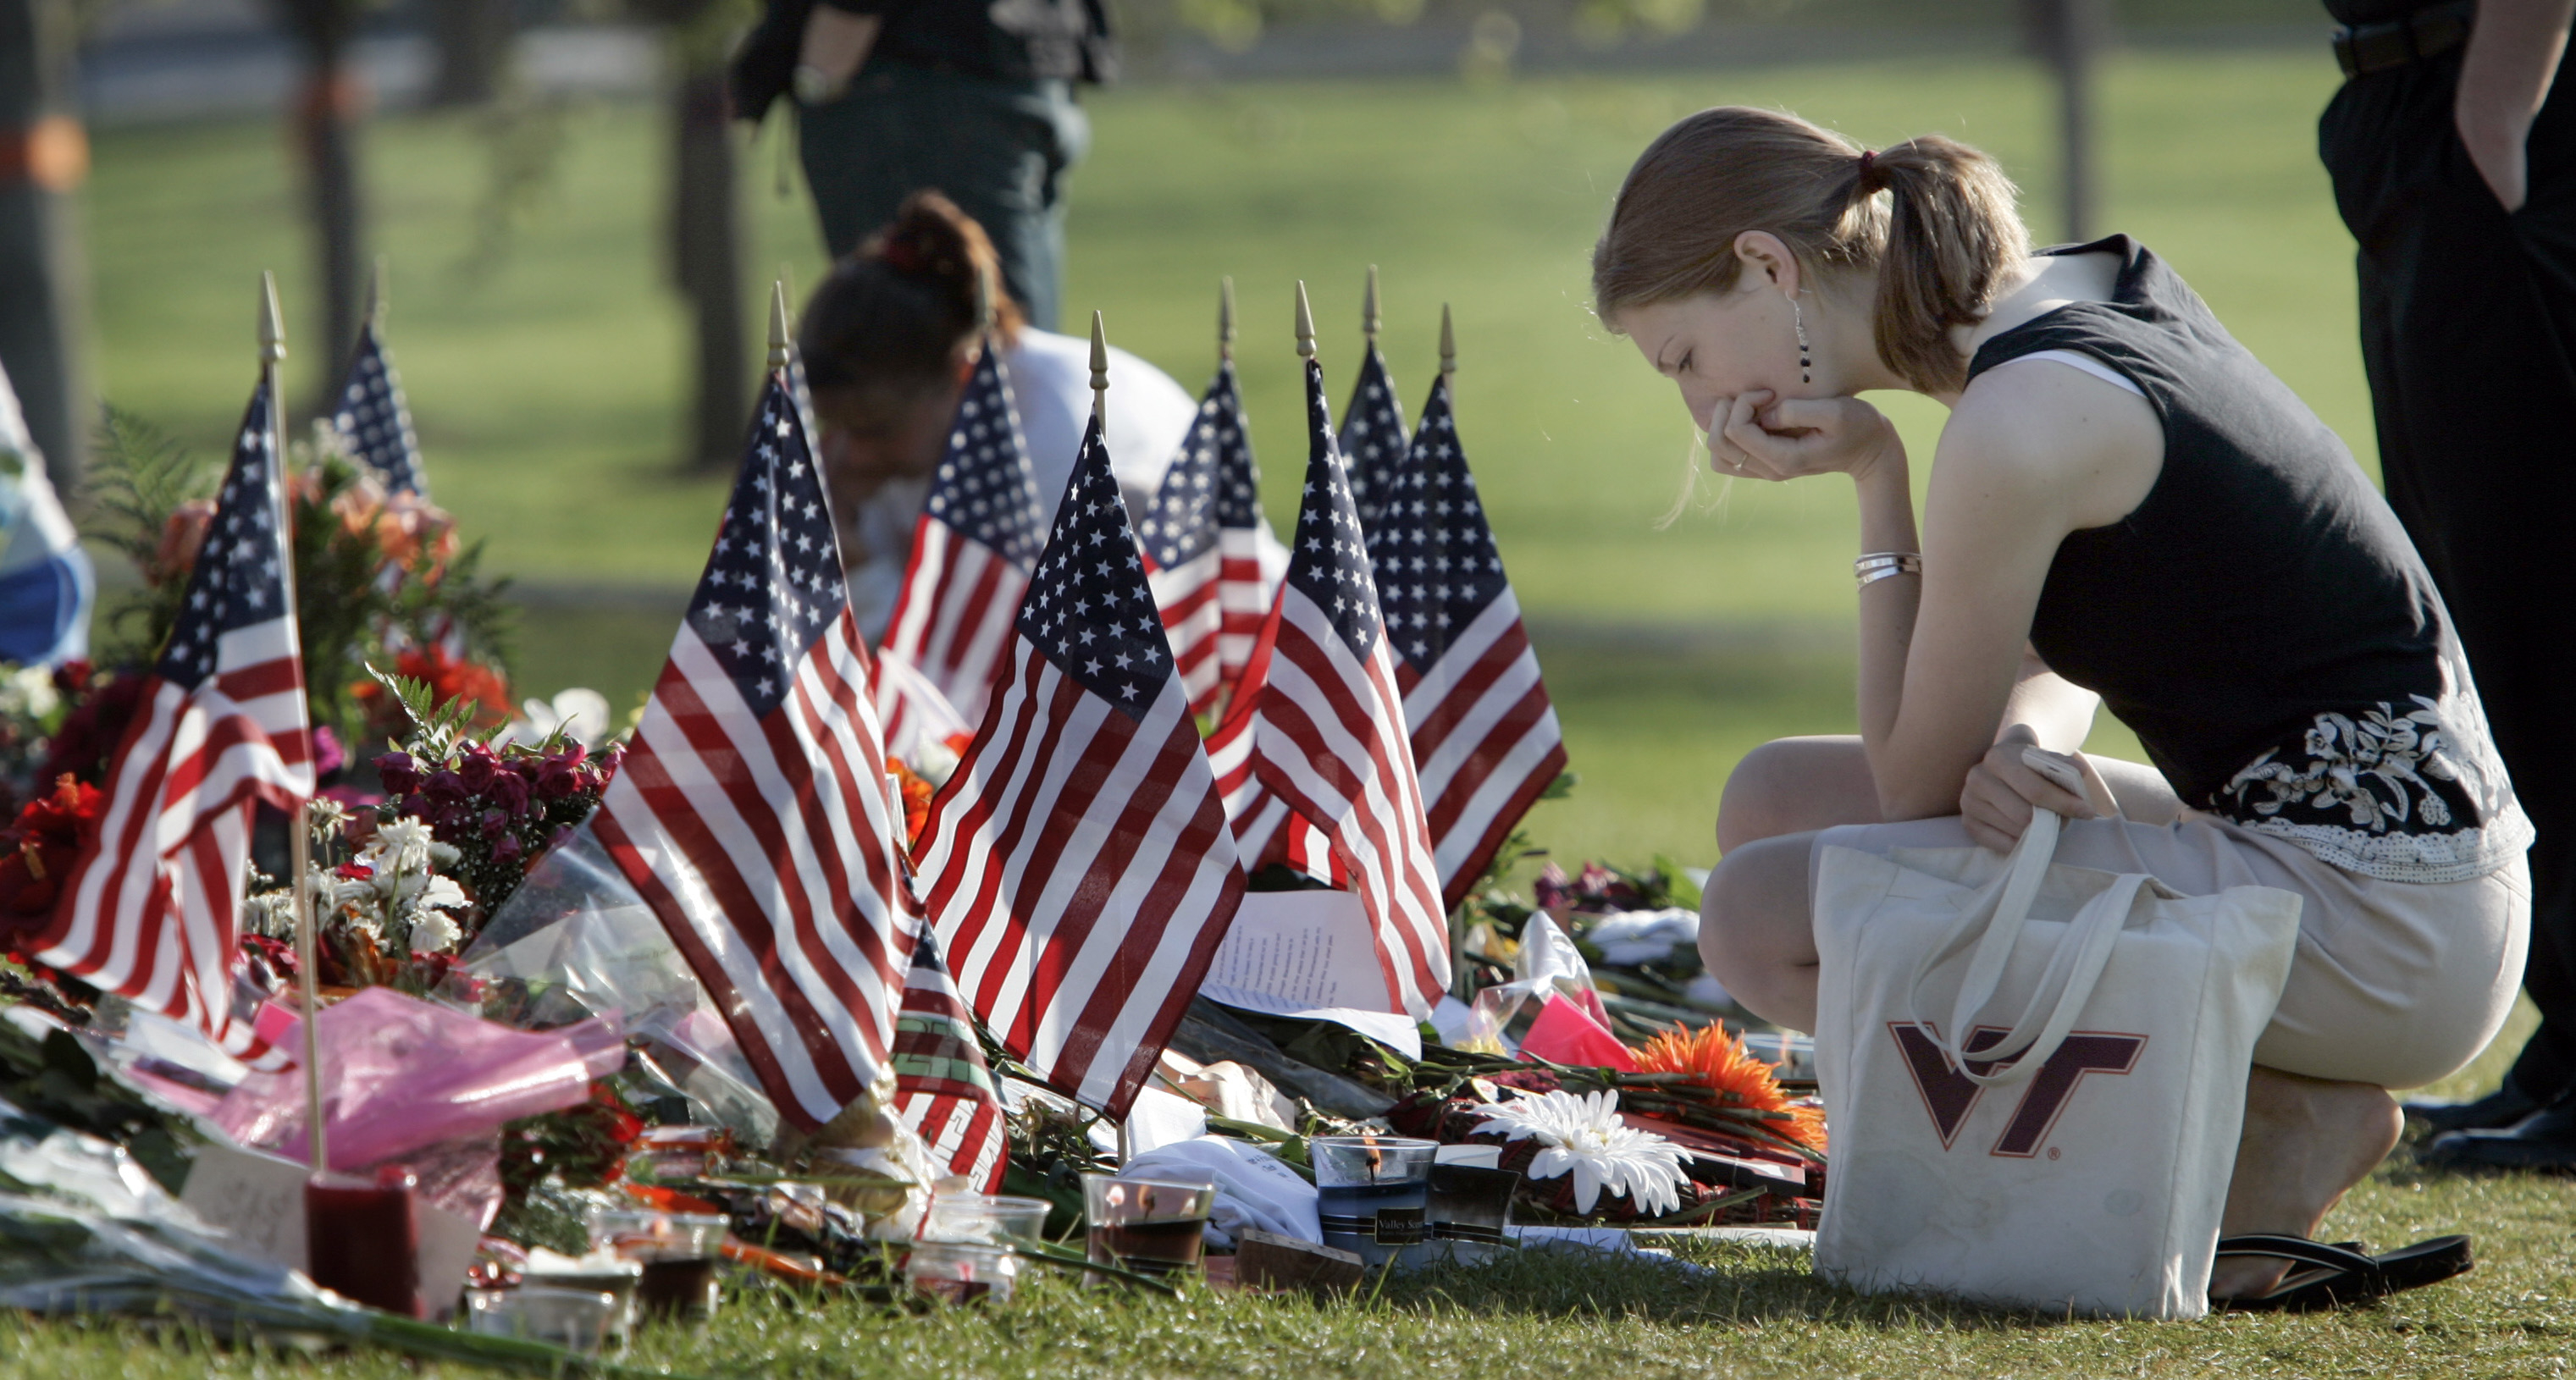 2007년 미국 버지니아공대에서 발생한 총기 난사 사건의 희생자를 기리는 추모식에서 시민들이 슬픔에 잠겨 있다.  버지니아 AP 연합뉴스